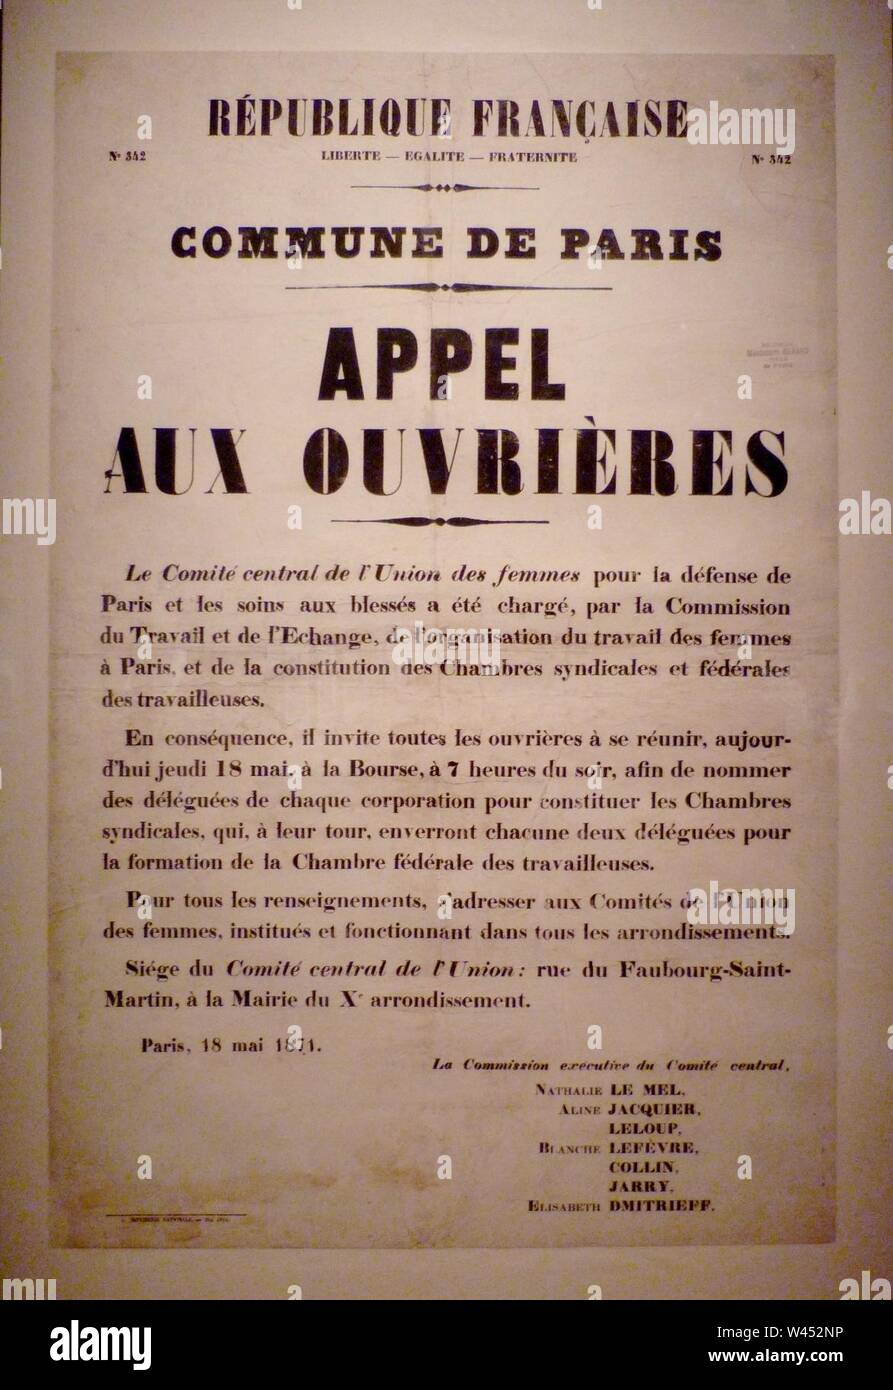 Commune de Paris Appel aux ouvrières vom 18. Mai 1871. Stockfoto